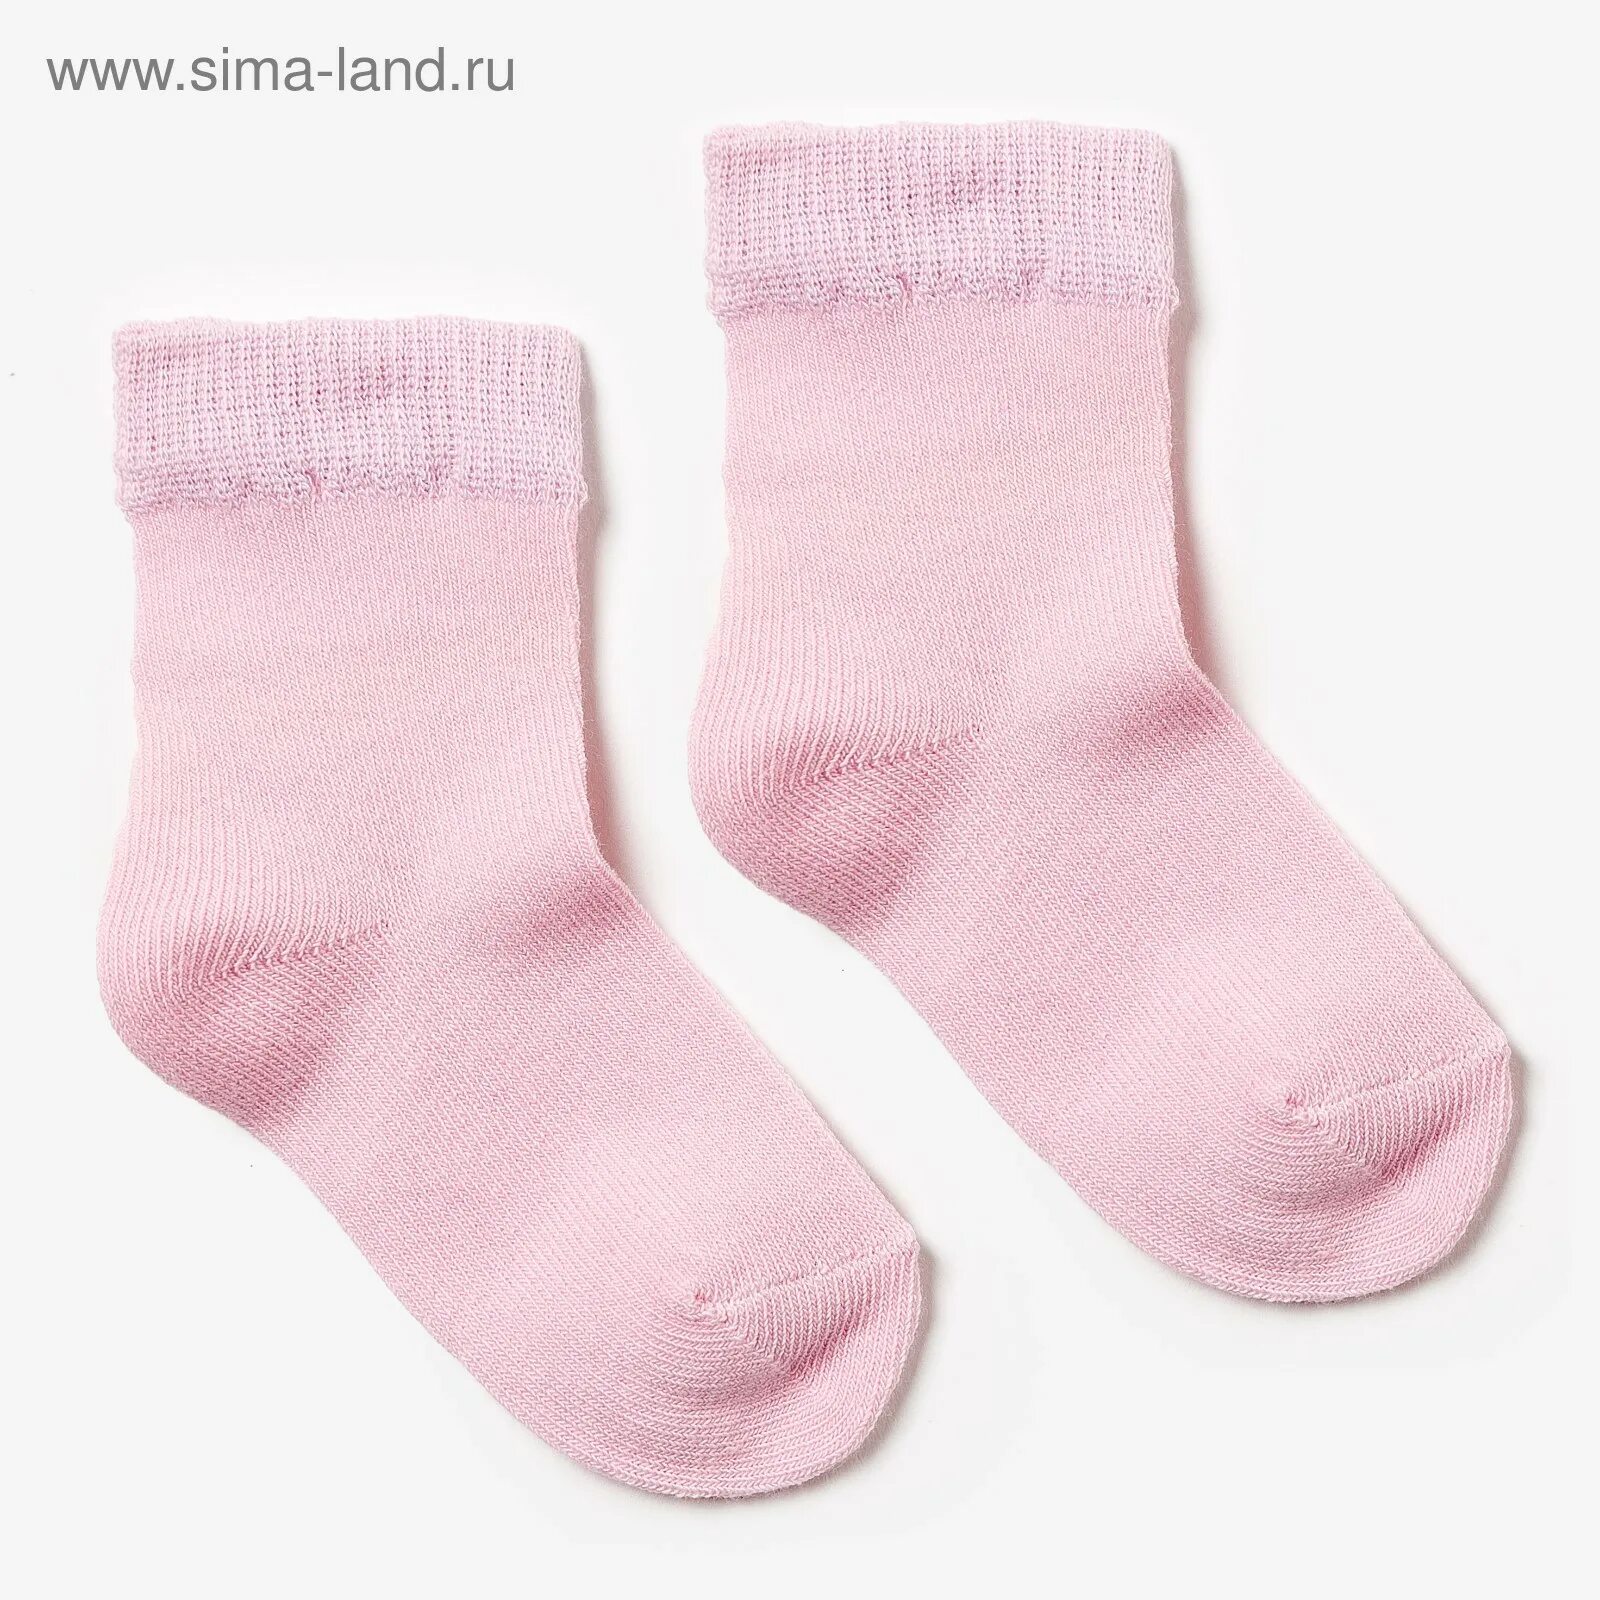 Картинка носочки. С190 3шт/уп носки детские/меланж розовый р.12-14. Носки для детей. Розовые носки. Розовые носочки детские.